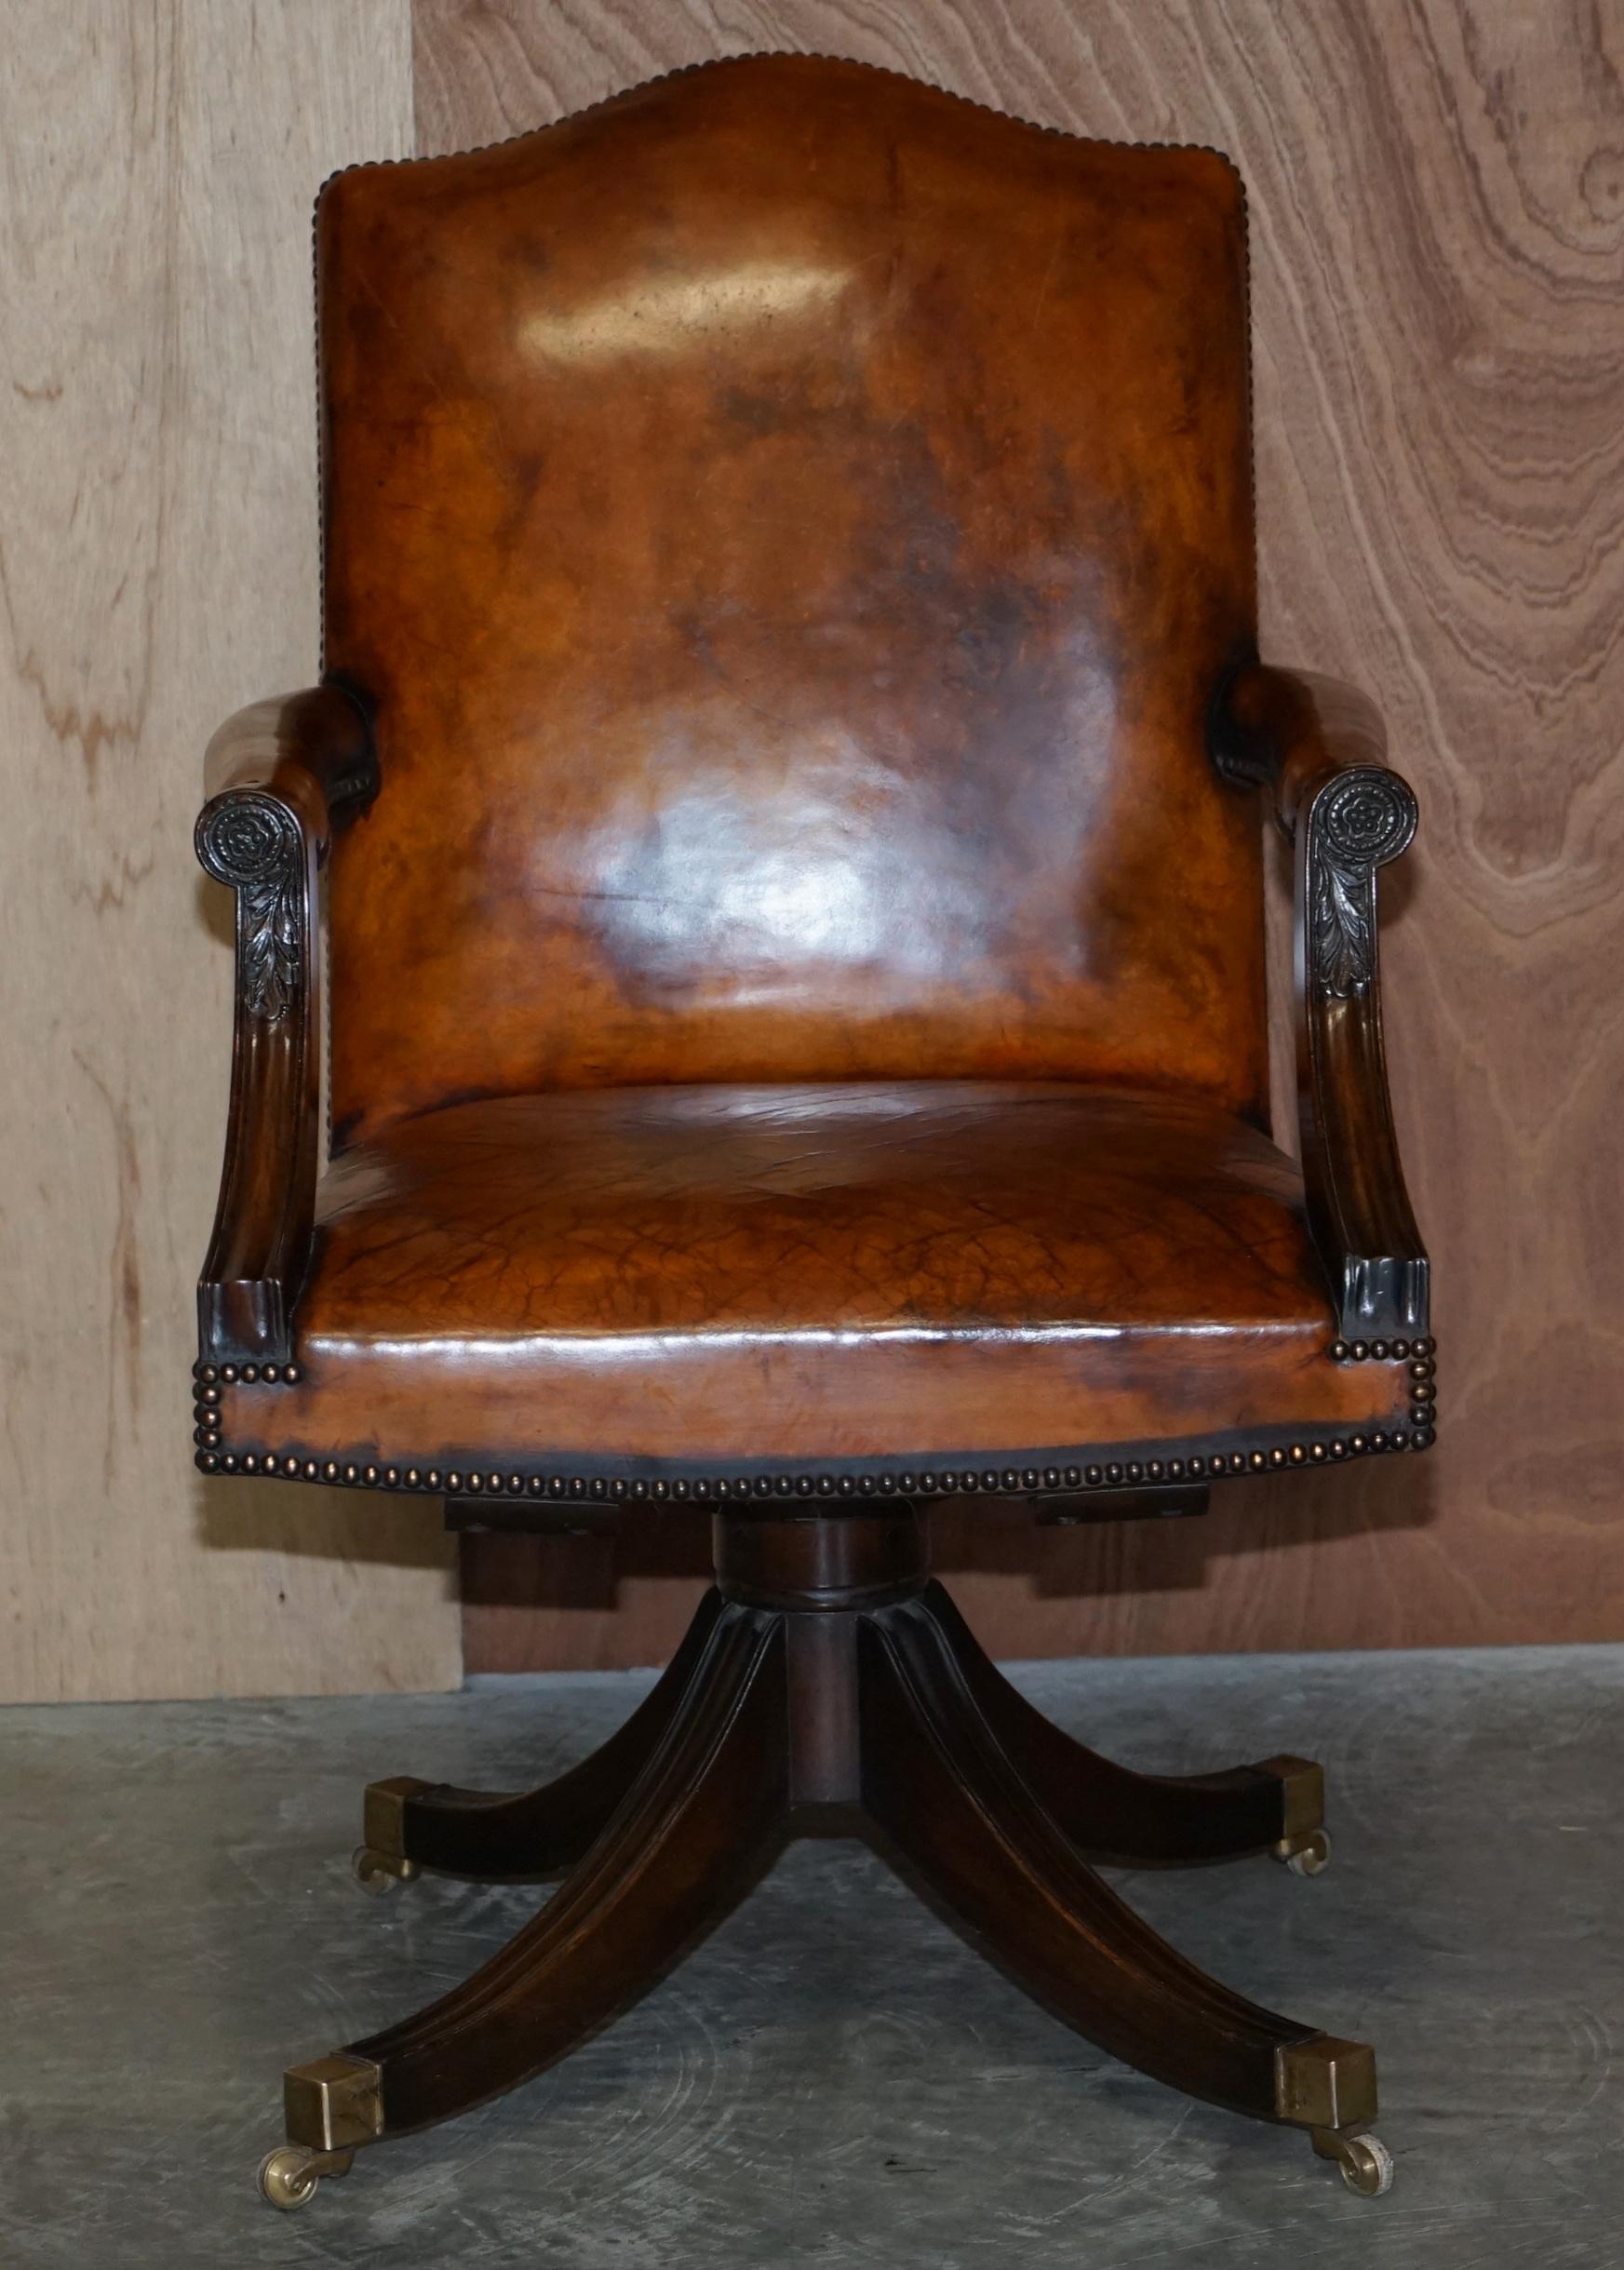 Wir freuen uns, diesen schönen, vollständig restaurierten originalen Eichenholzstuhl mit handgefärbtem zigarrenbraunem Leder zum Verkauf anzubieten.

Ein sehr gut aussehender, gut gemachter und bequemer Chefsessel, ich habe noch nie einen mit